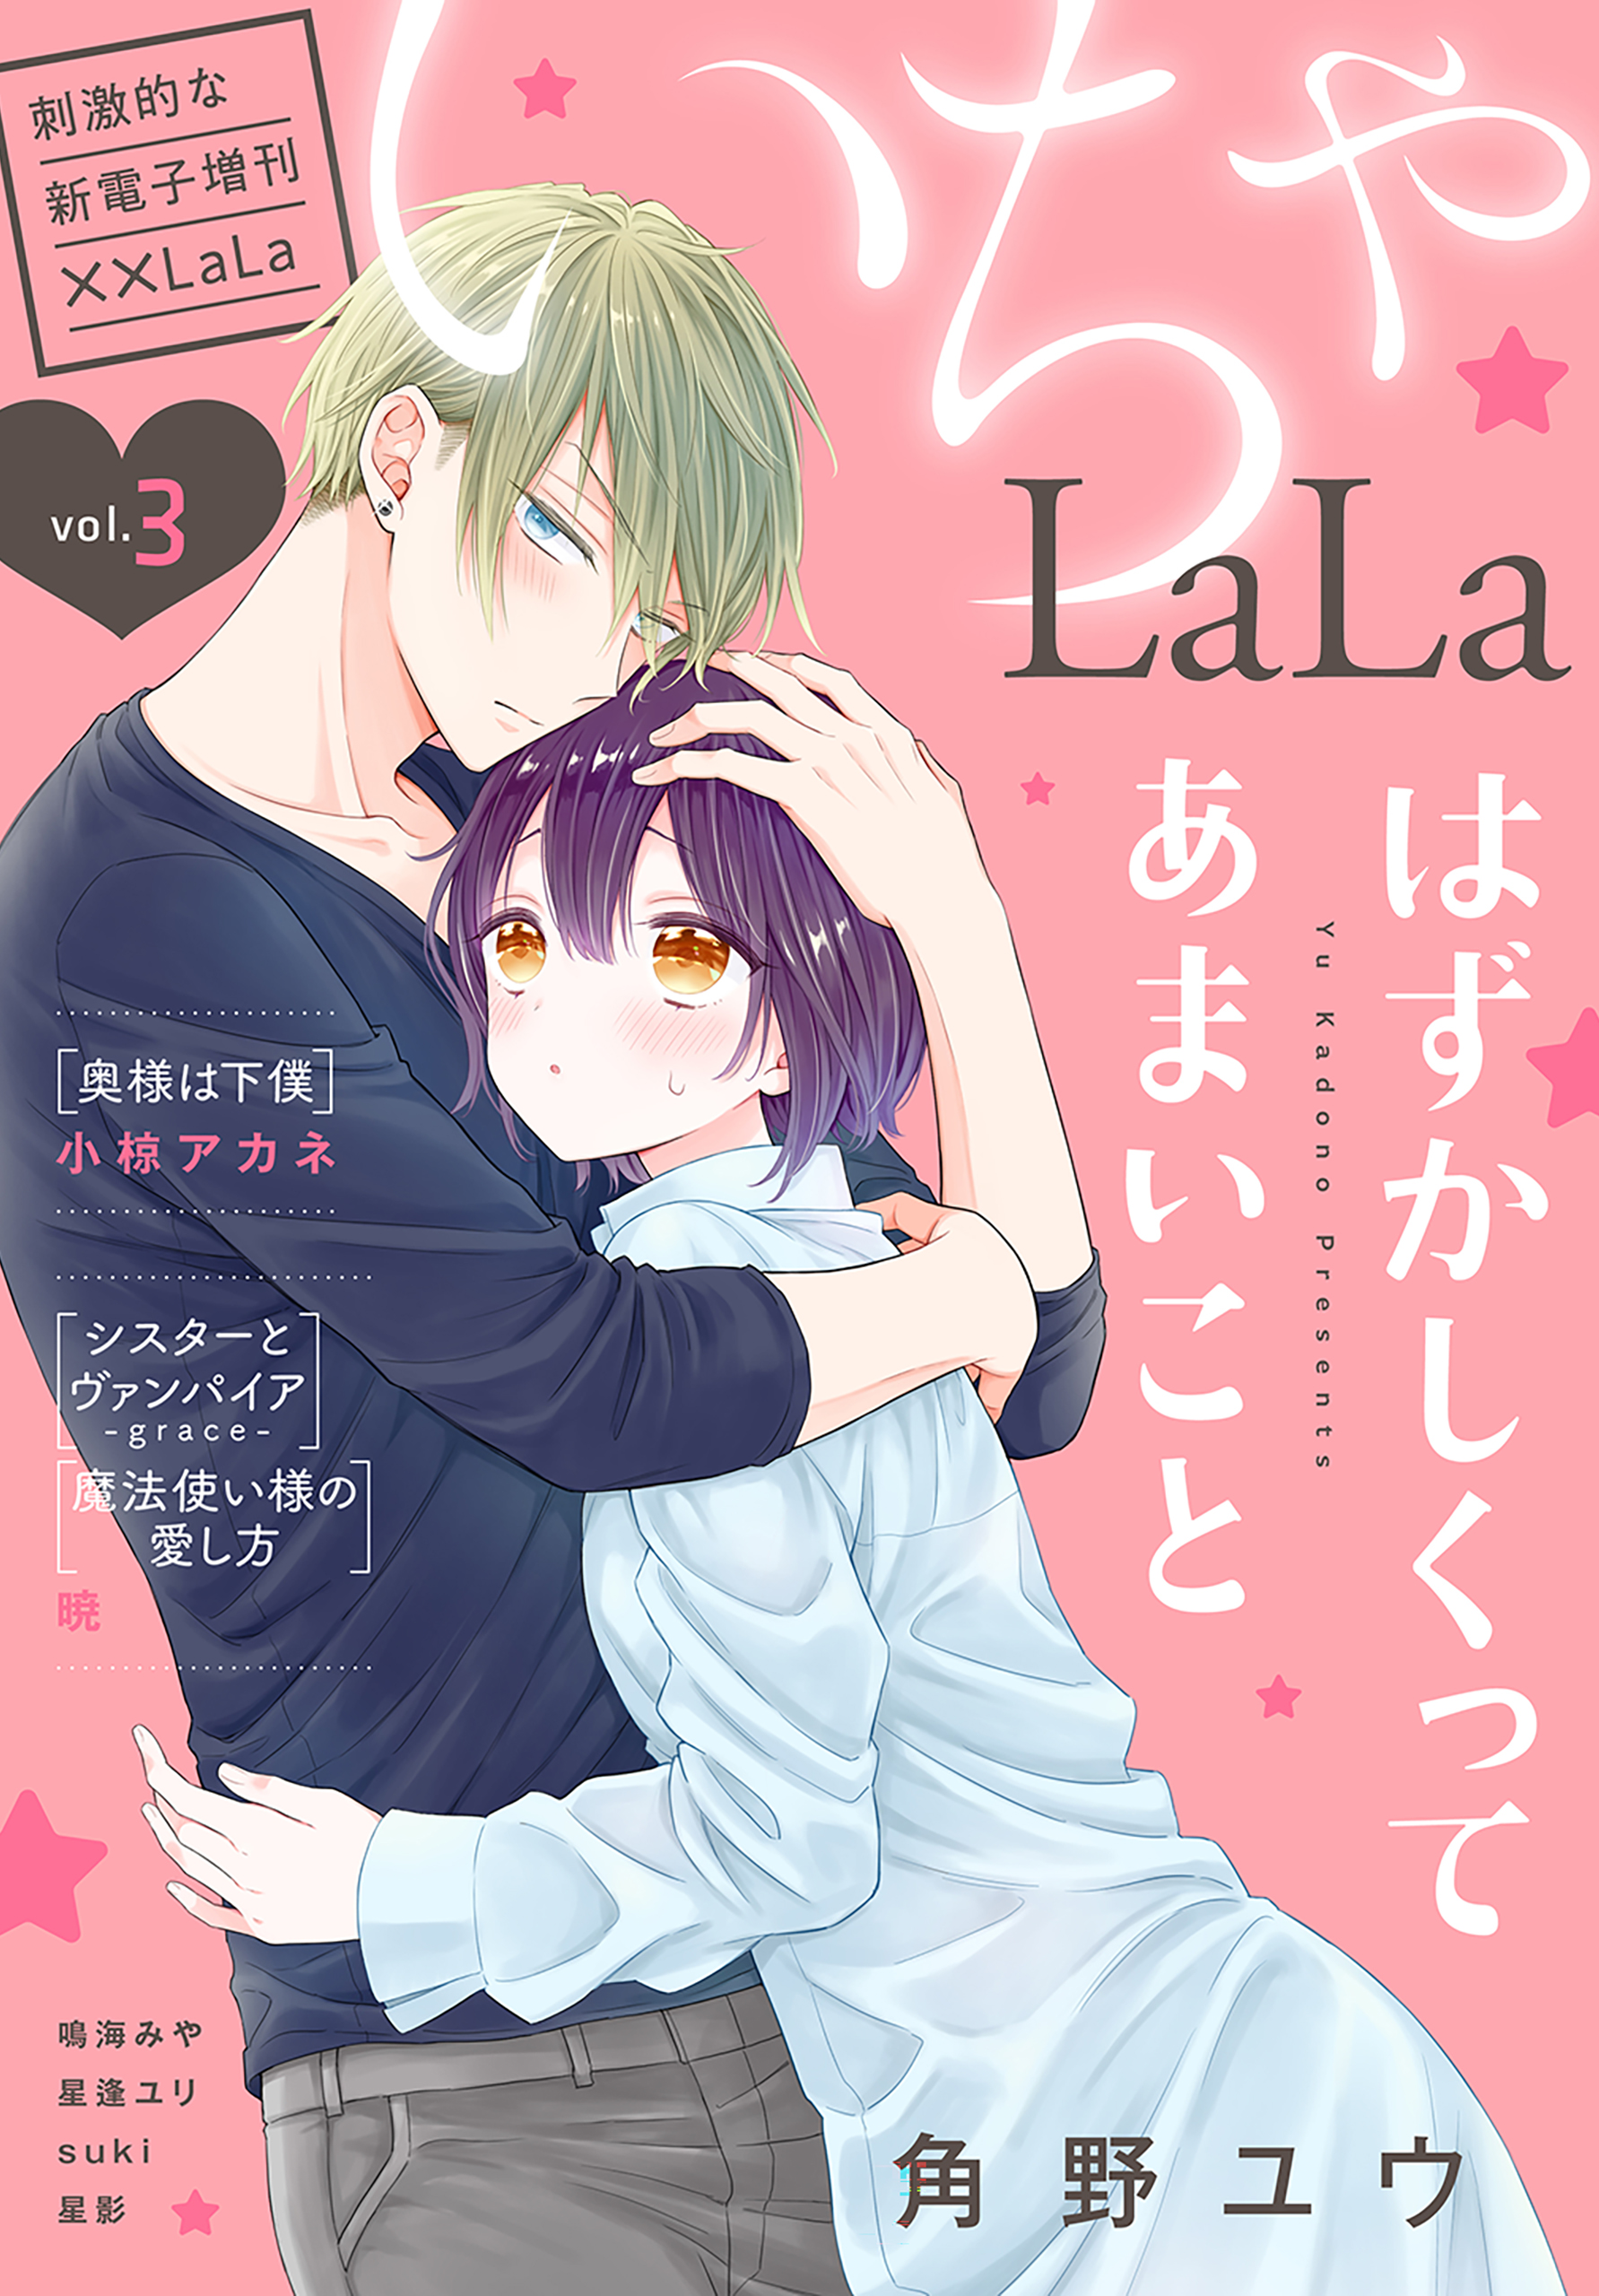 LaLa いちゃLaLa Vol.3 - 暁/小椋アカネ - 漫画・無料試し読みなら